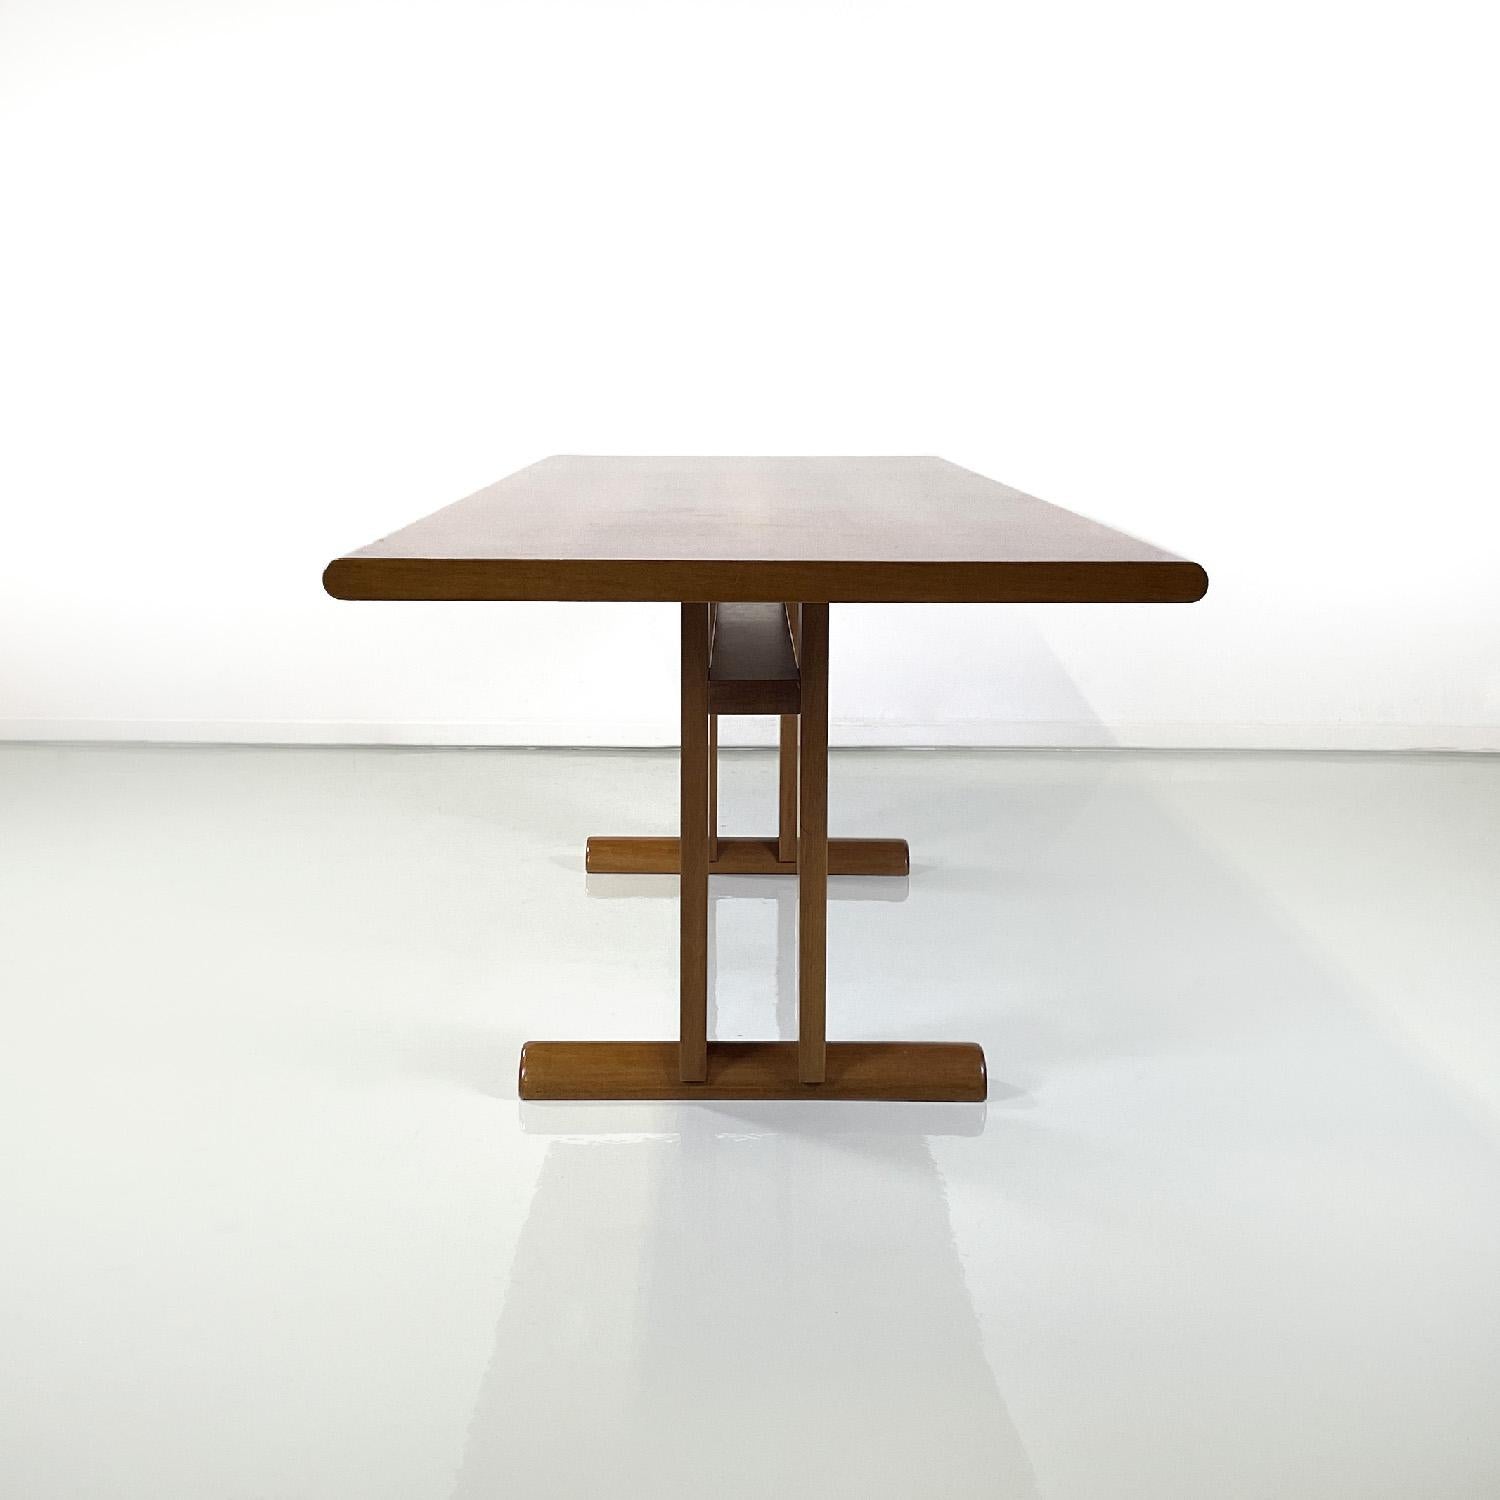 Modern Italian modern rectangular wooden dining table, 1980s